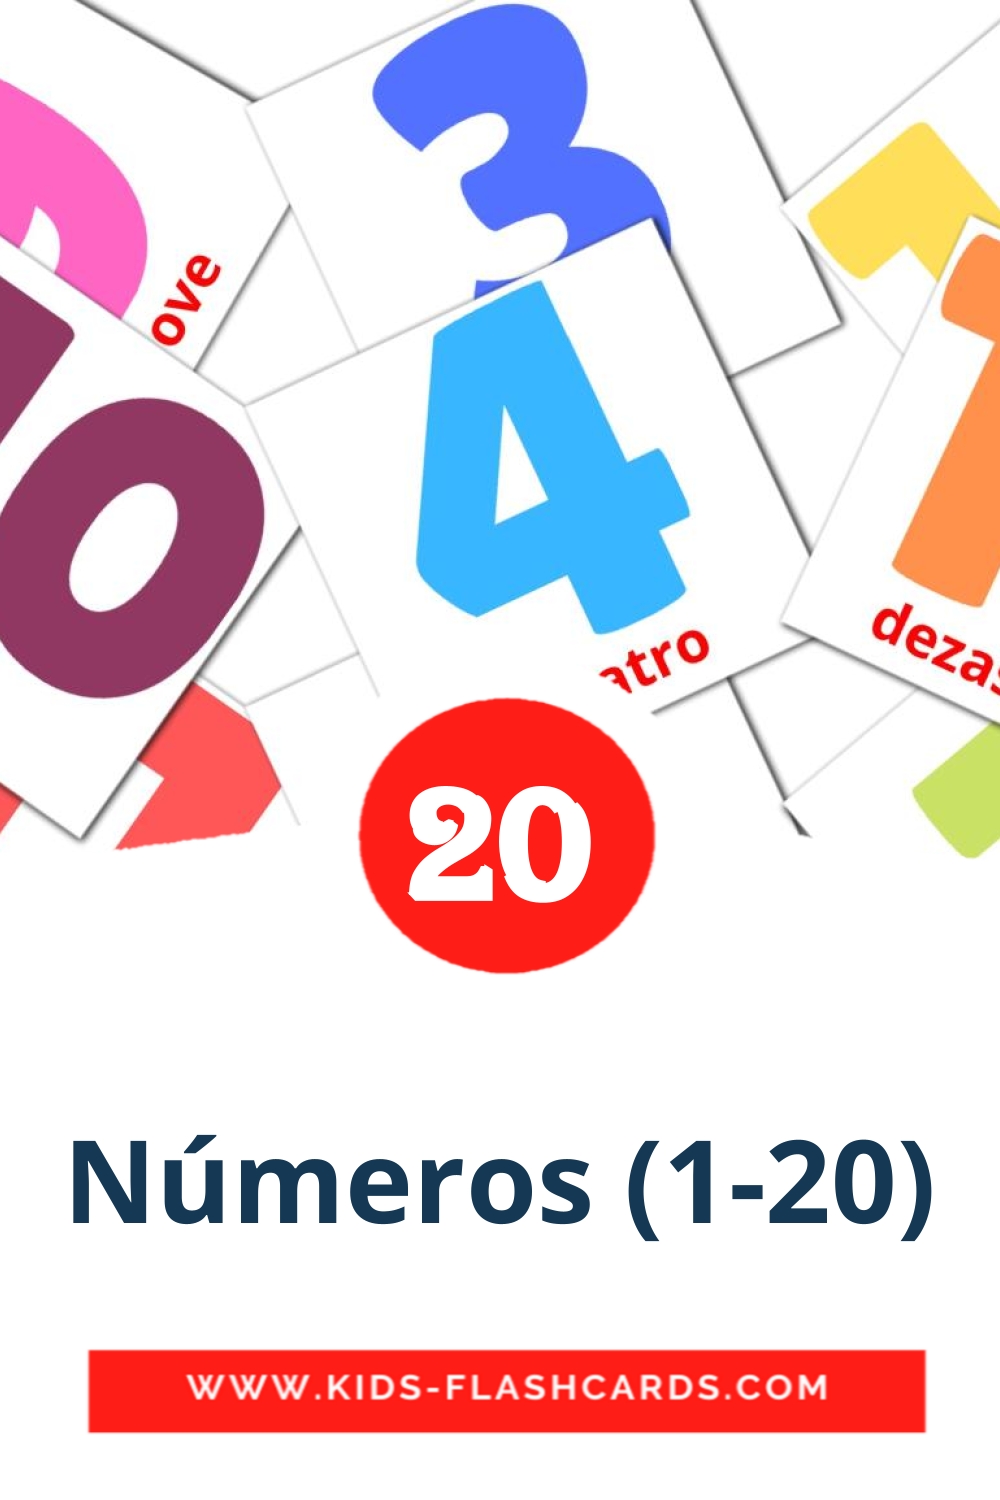 20 Cartões com Imagens de Números (1-20) para Jardim de Infância em português